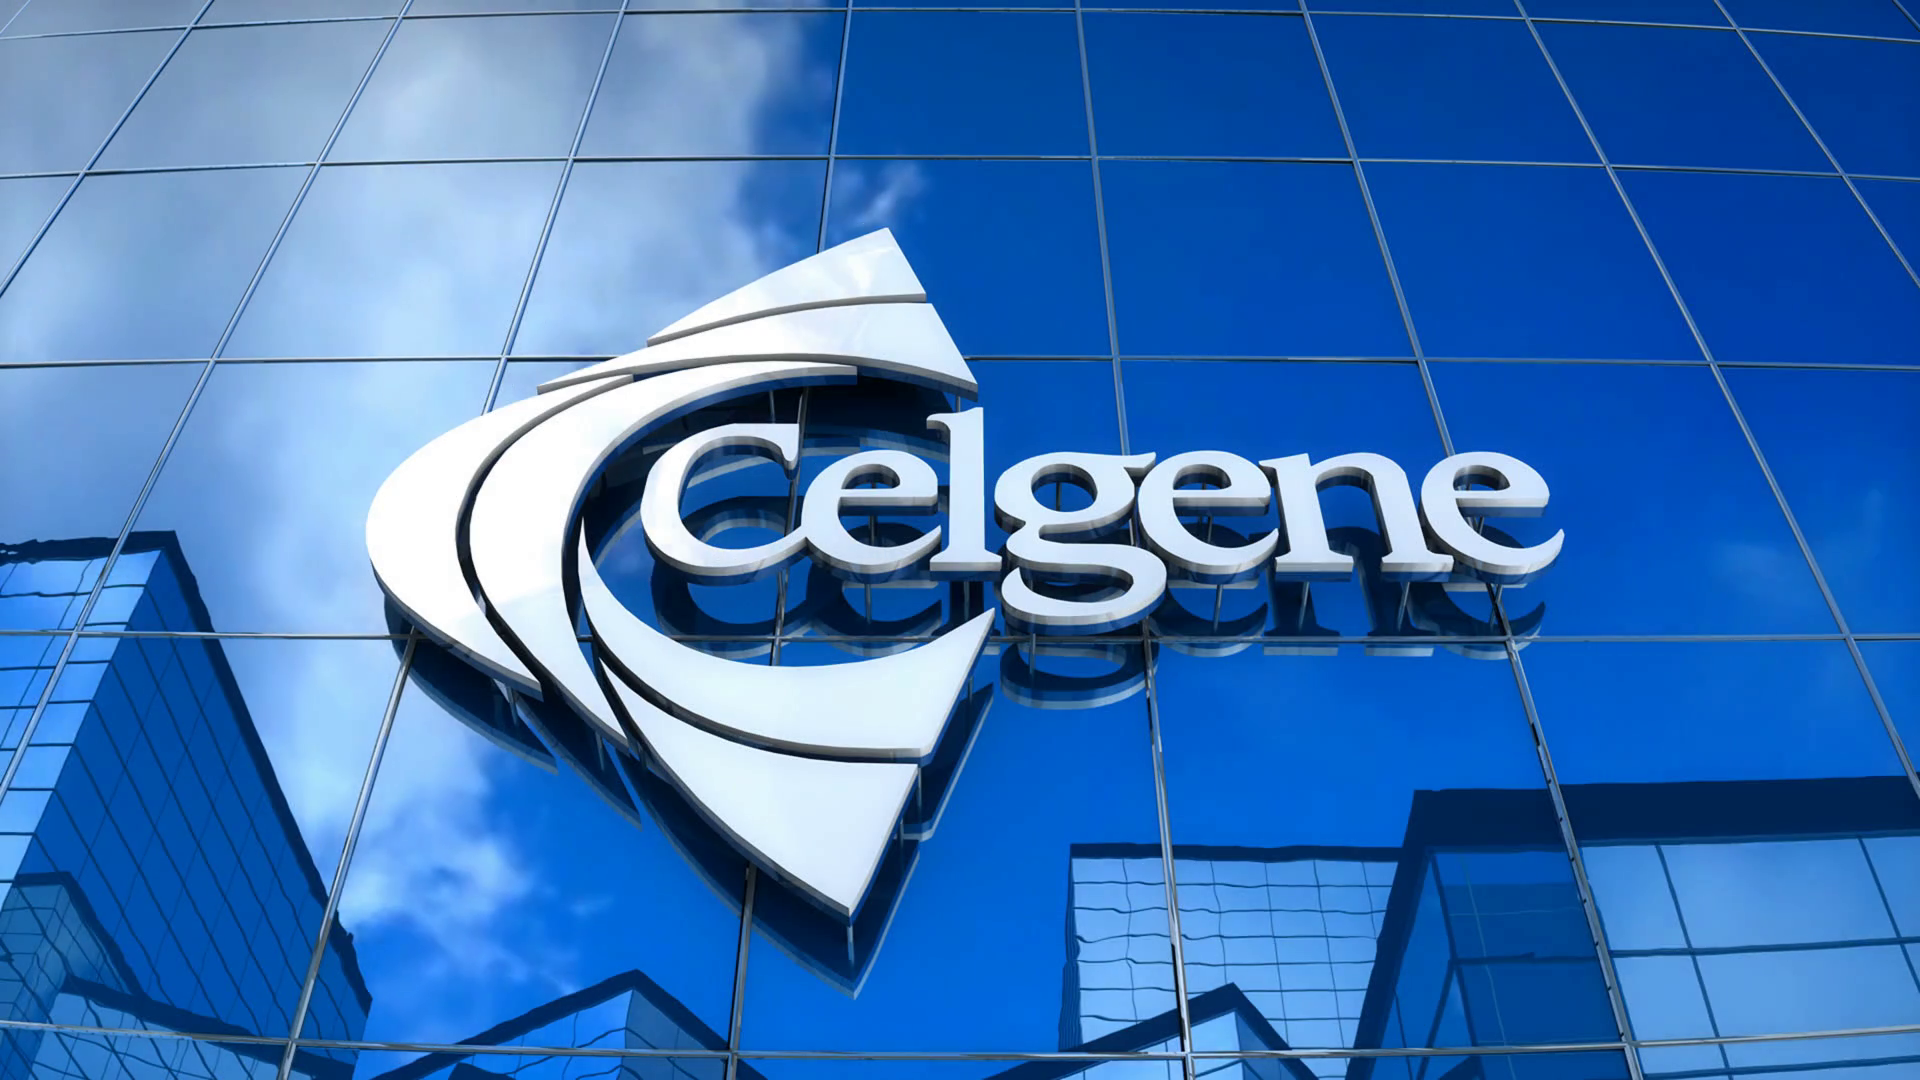 Image result for Celgene